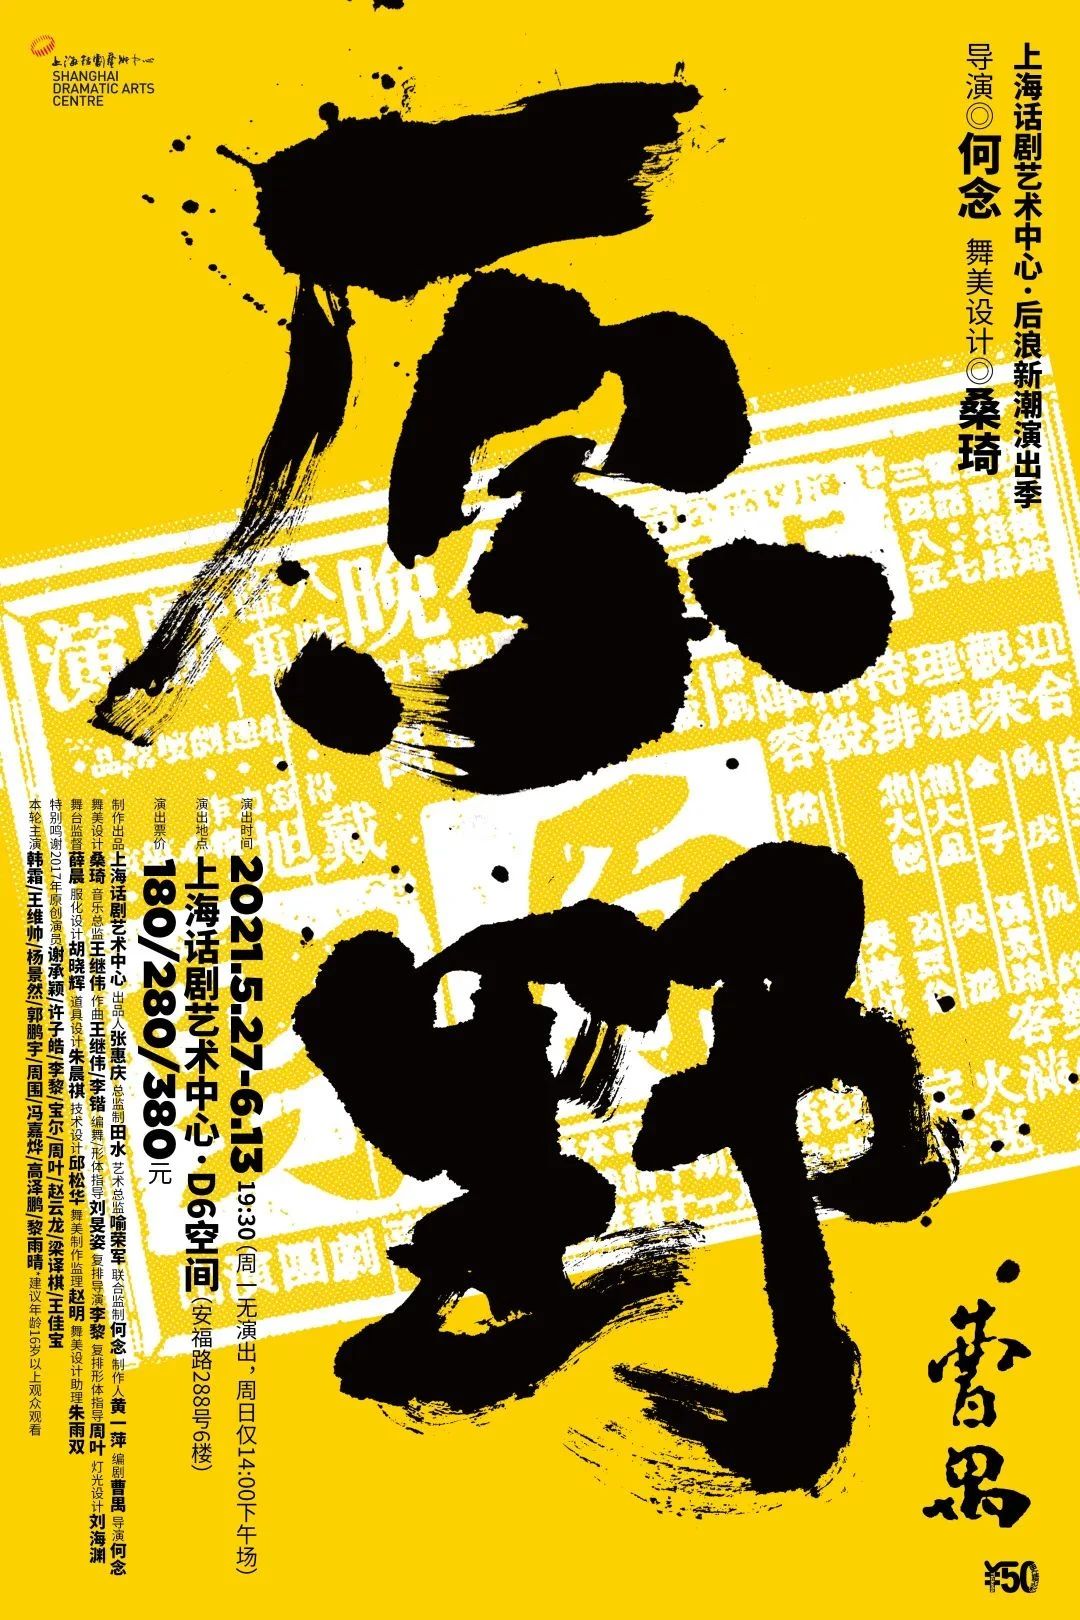 中文海报设计作品 中国最时尚大气的海报设计欣赏